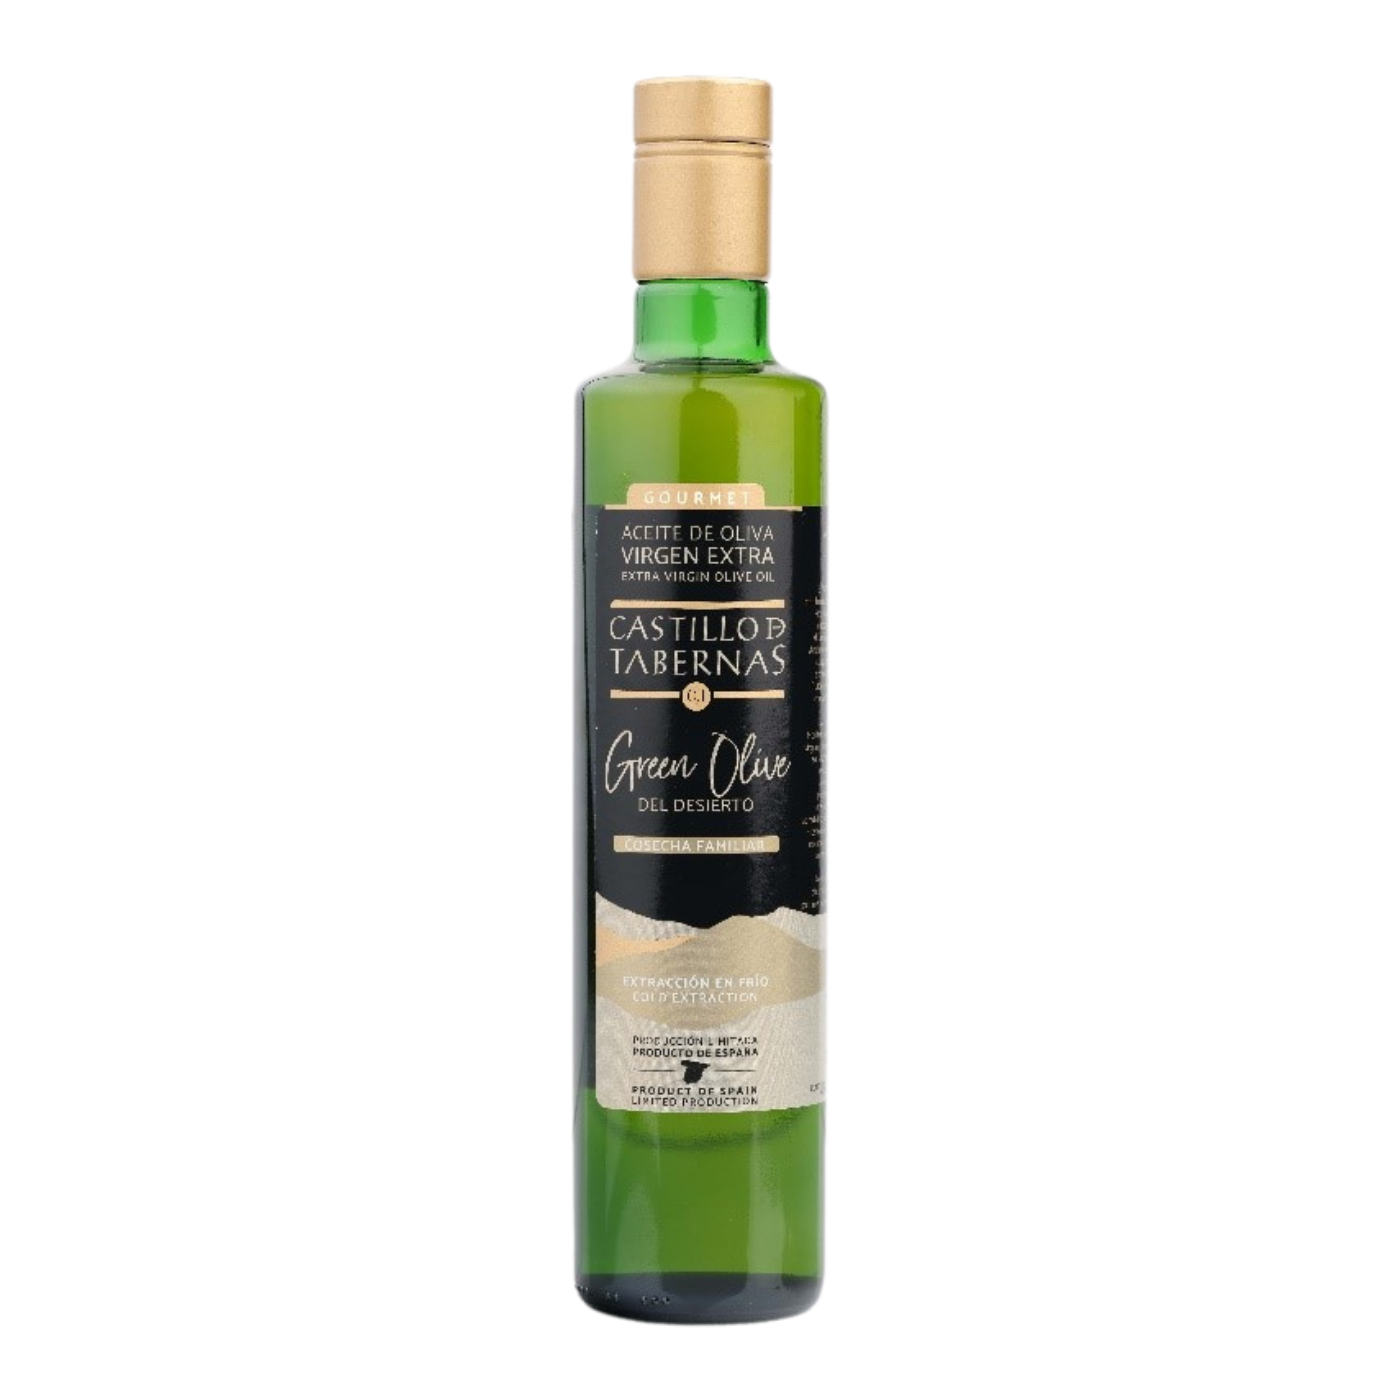 botella de aceite green olive